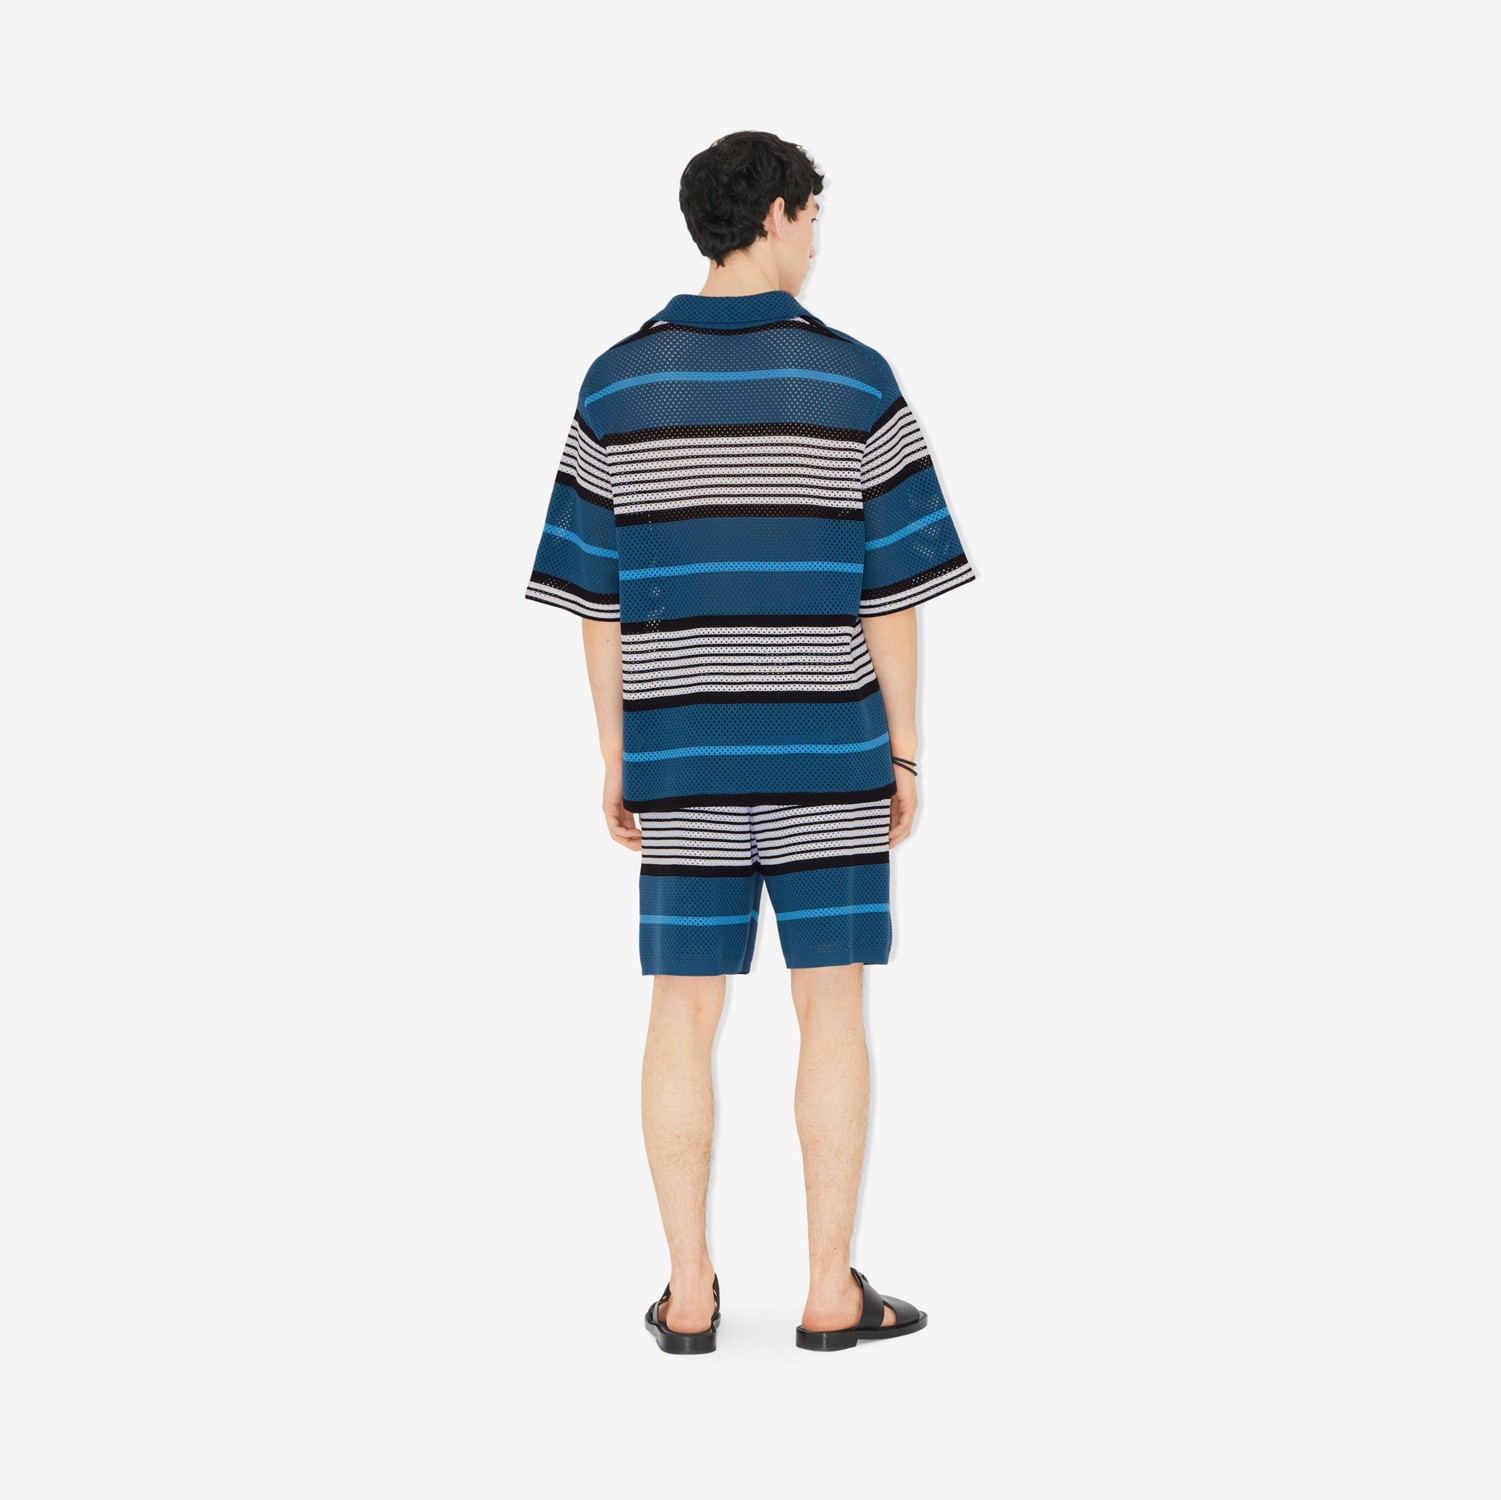 Camisa oversize de nylon com mangas curtas e estampa de listras (Azul Marinho Enriquecido) - Homens | Burberry® oficial